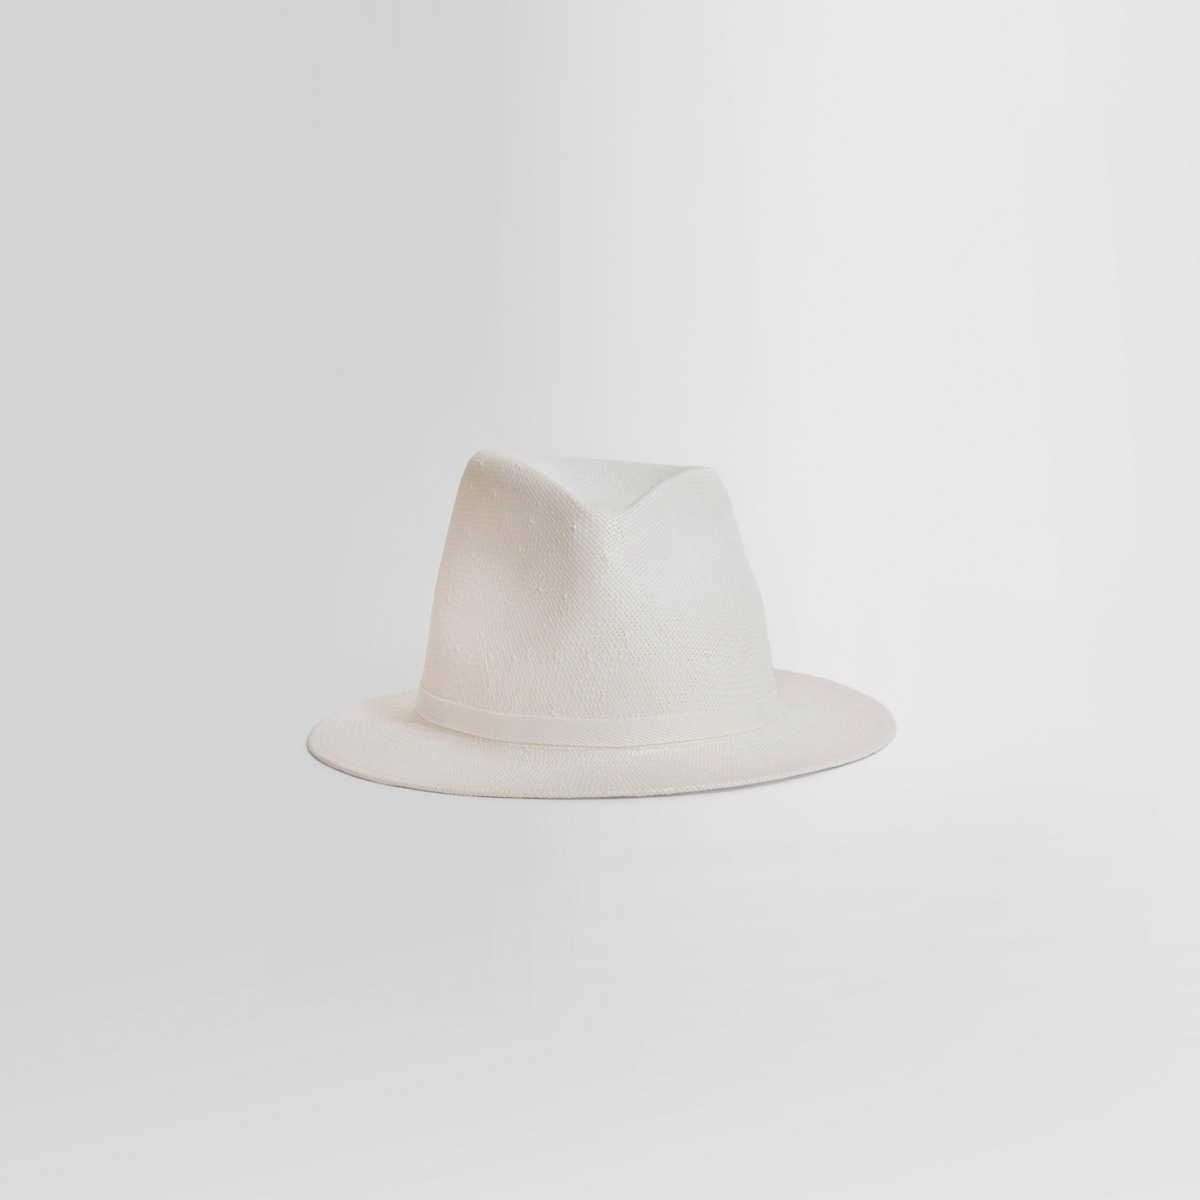 Gents Hat in White Antonioli Ann Demeulemeester GOOFASH